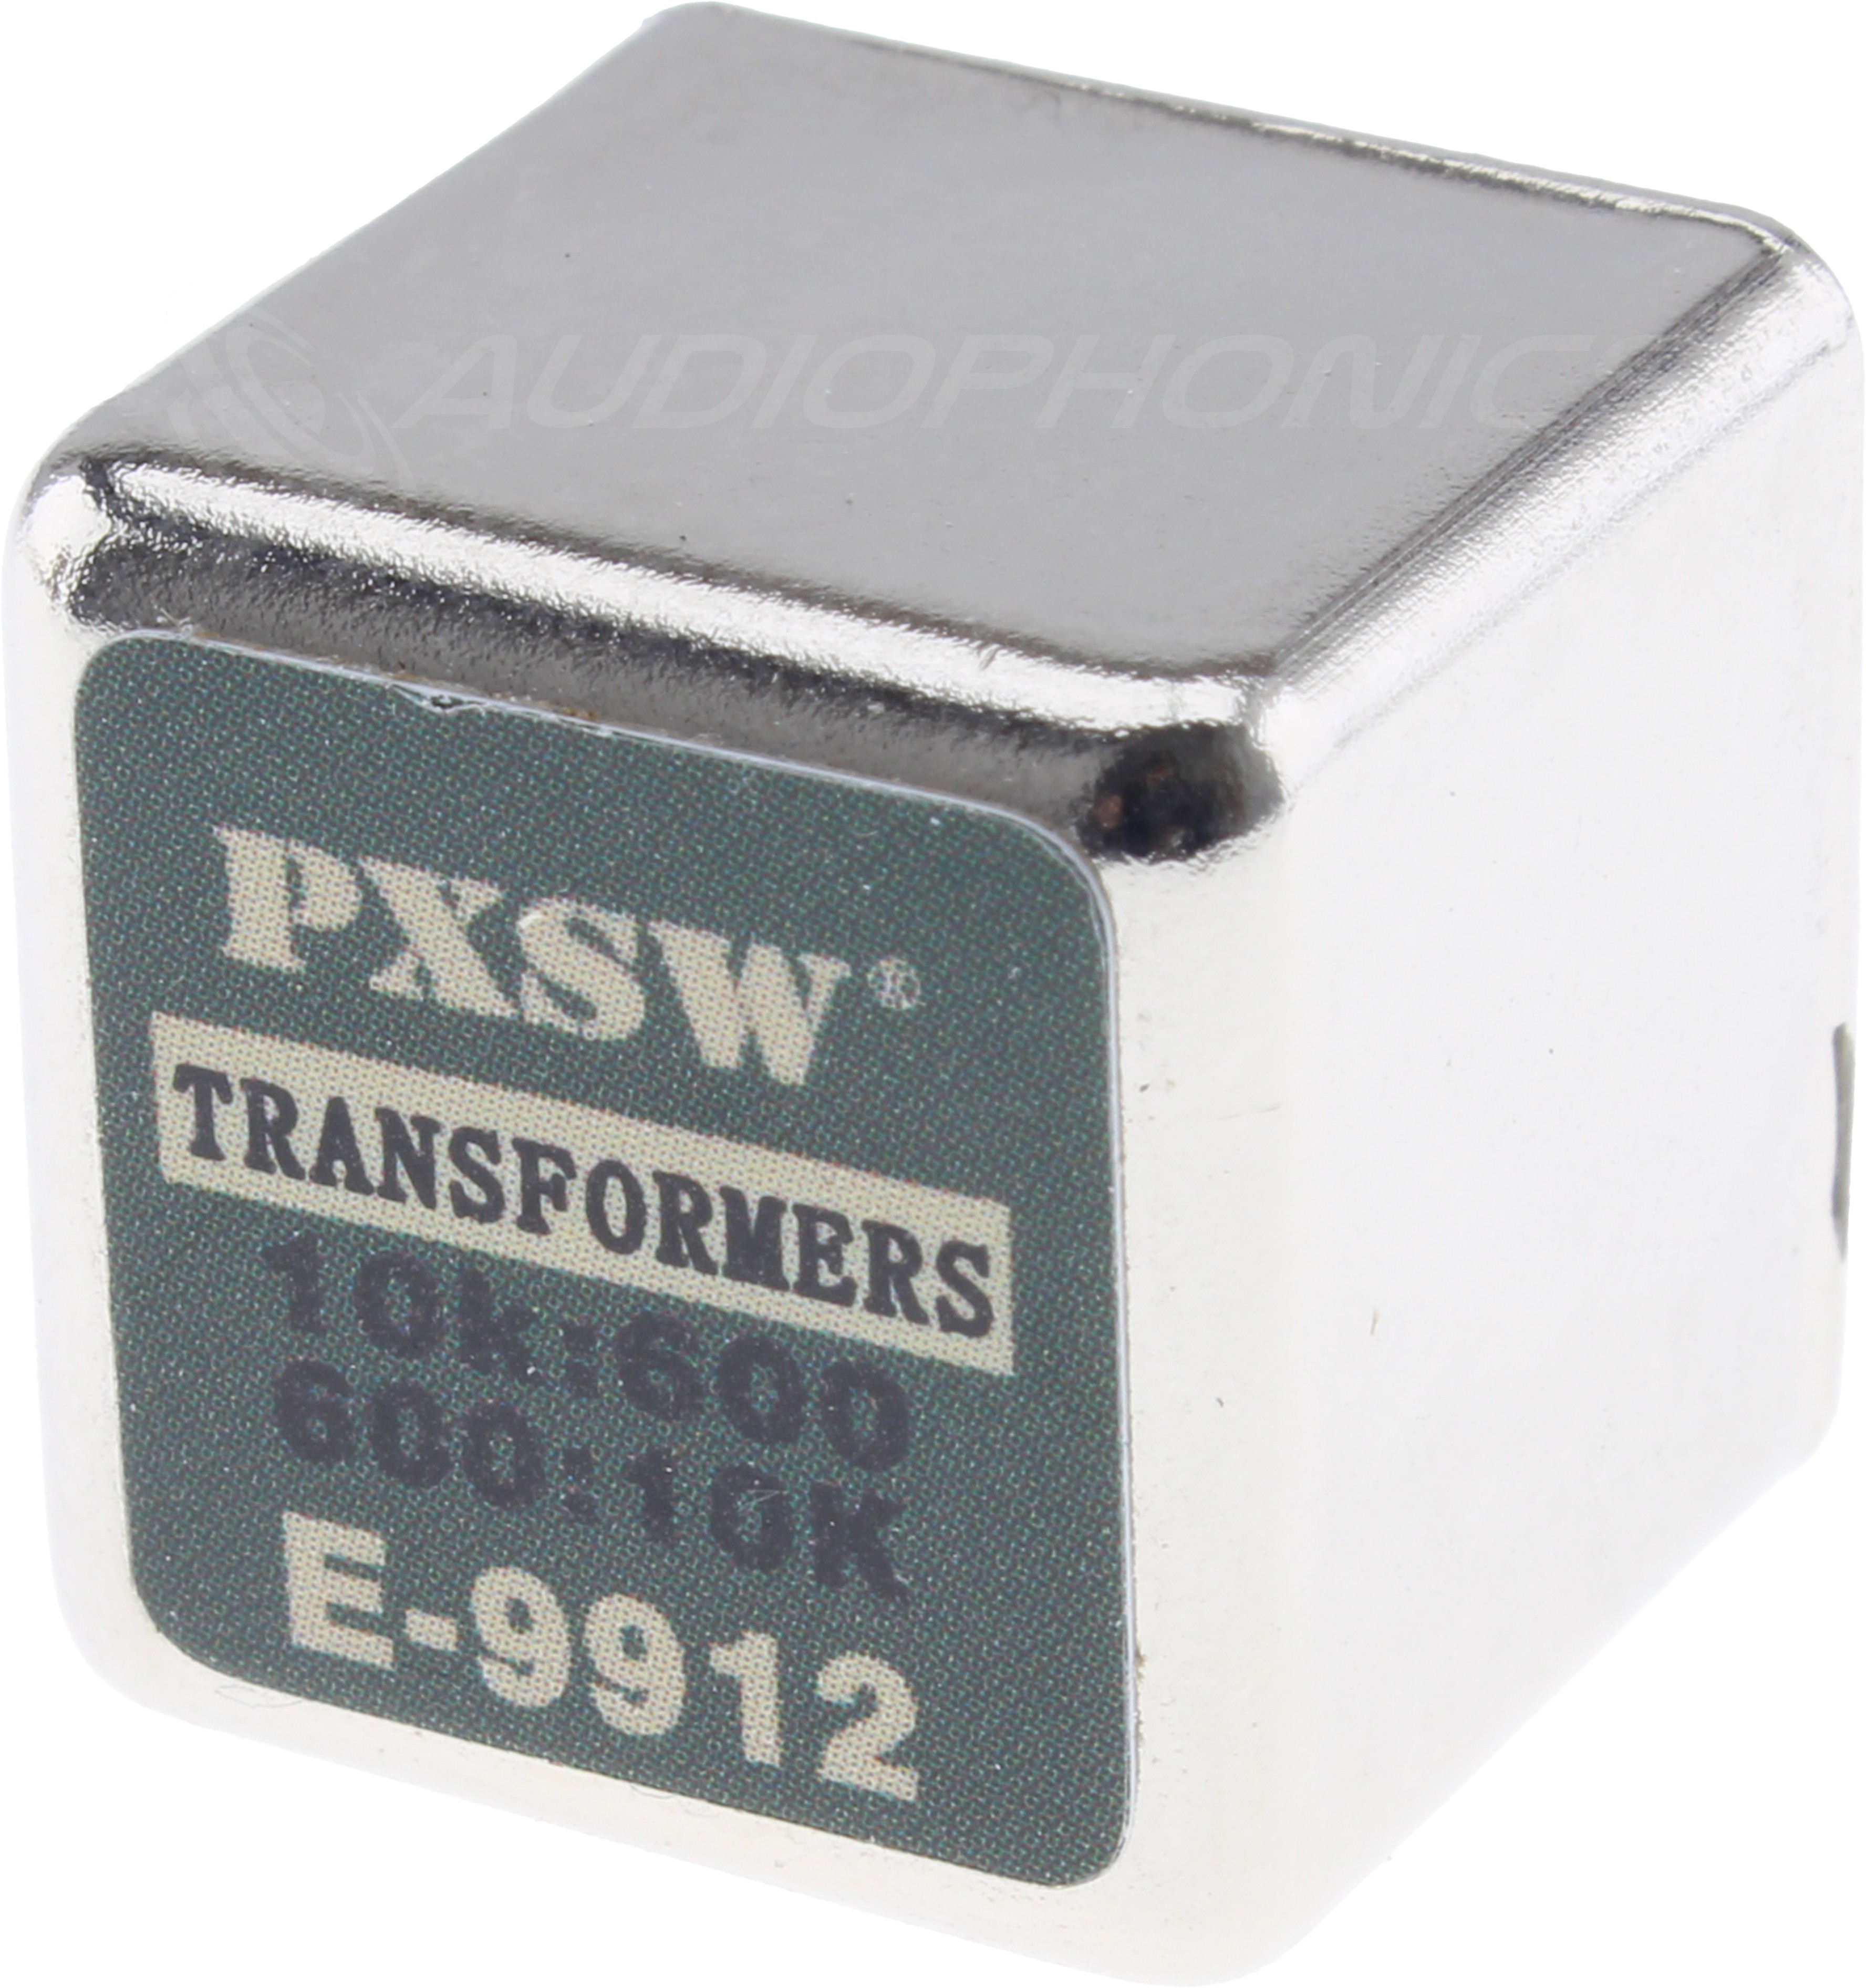 Transformateur Audio E-9818 600:10K (Unité)